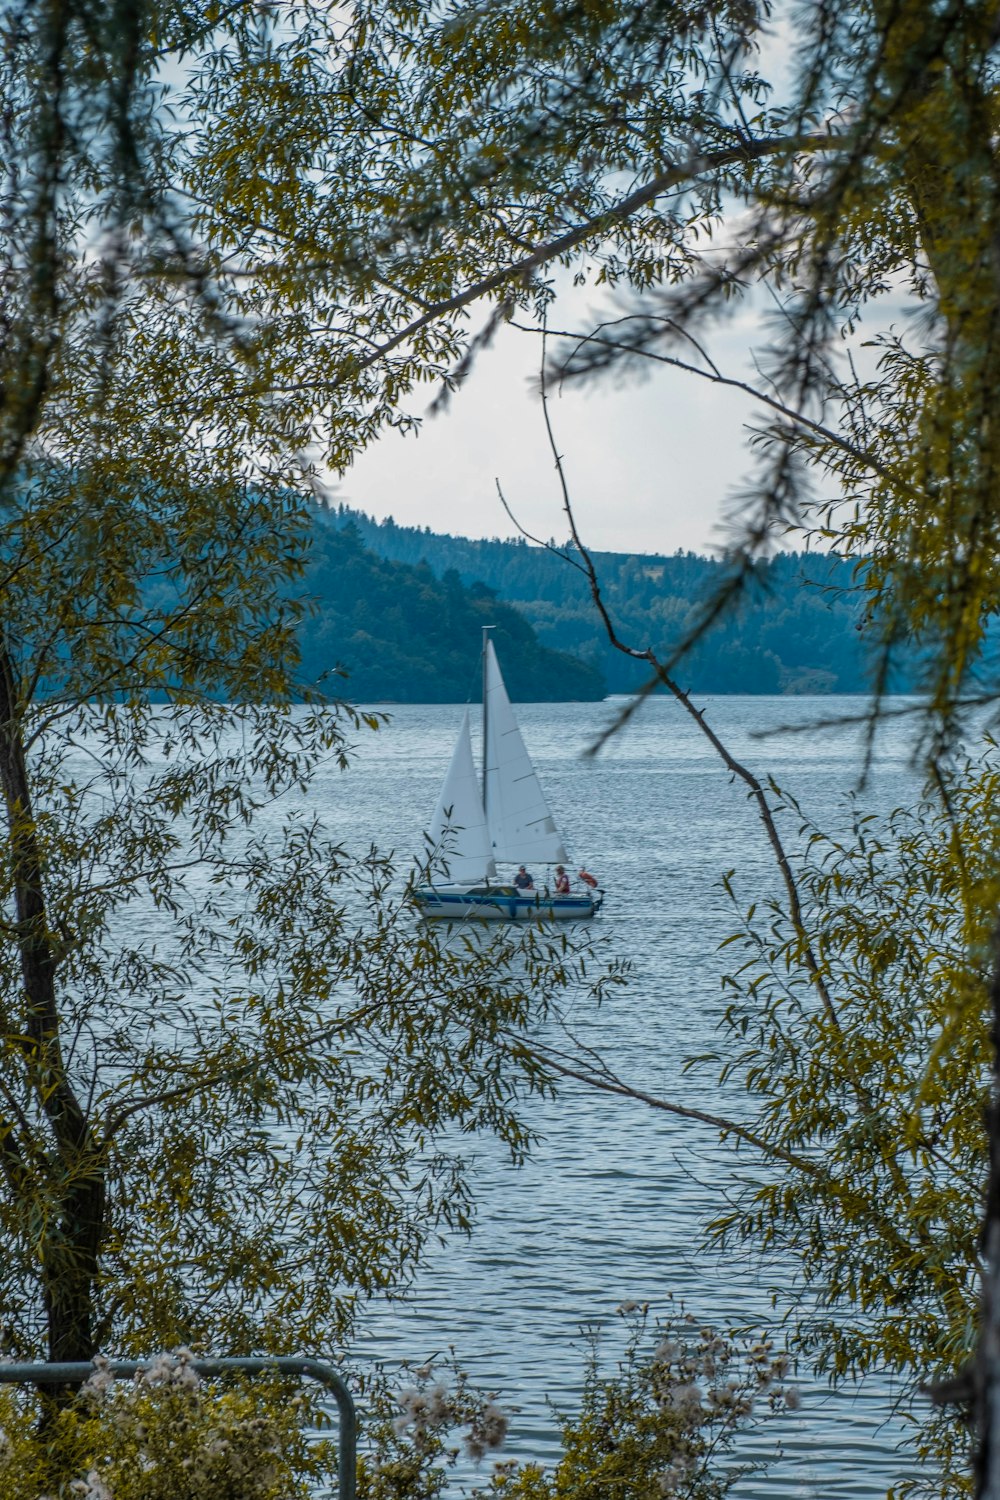 前景に木々が生い茂る湖に浮かぶ帆船